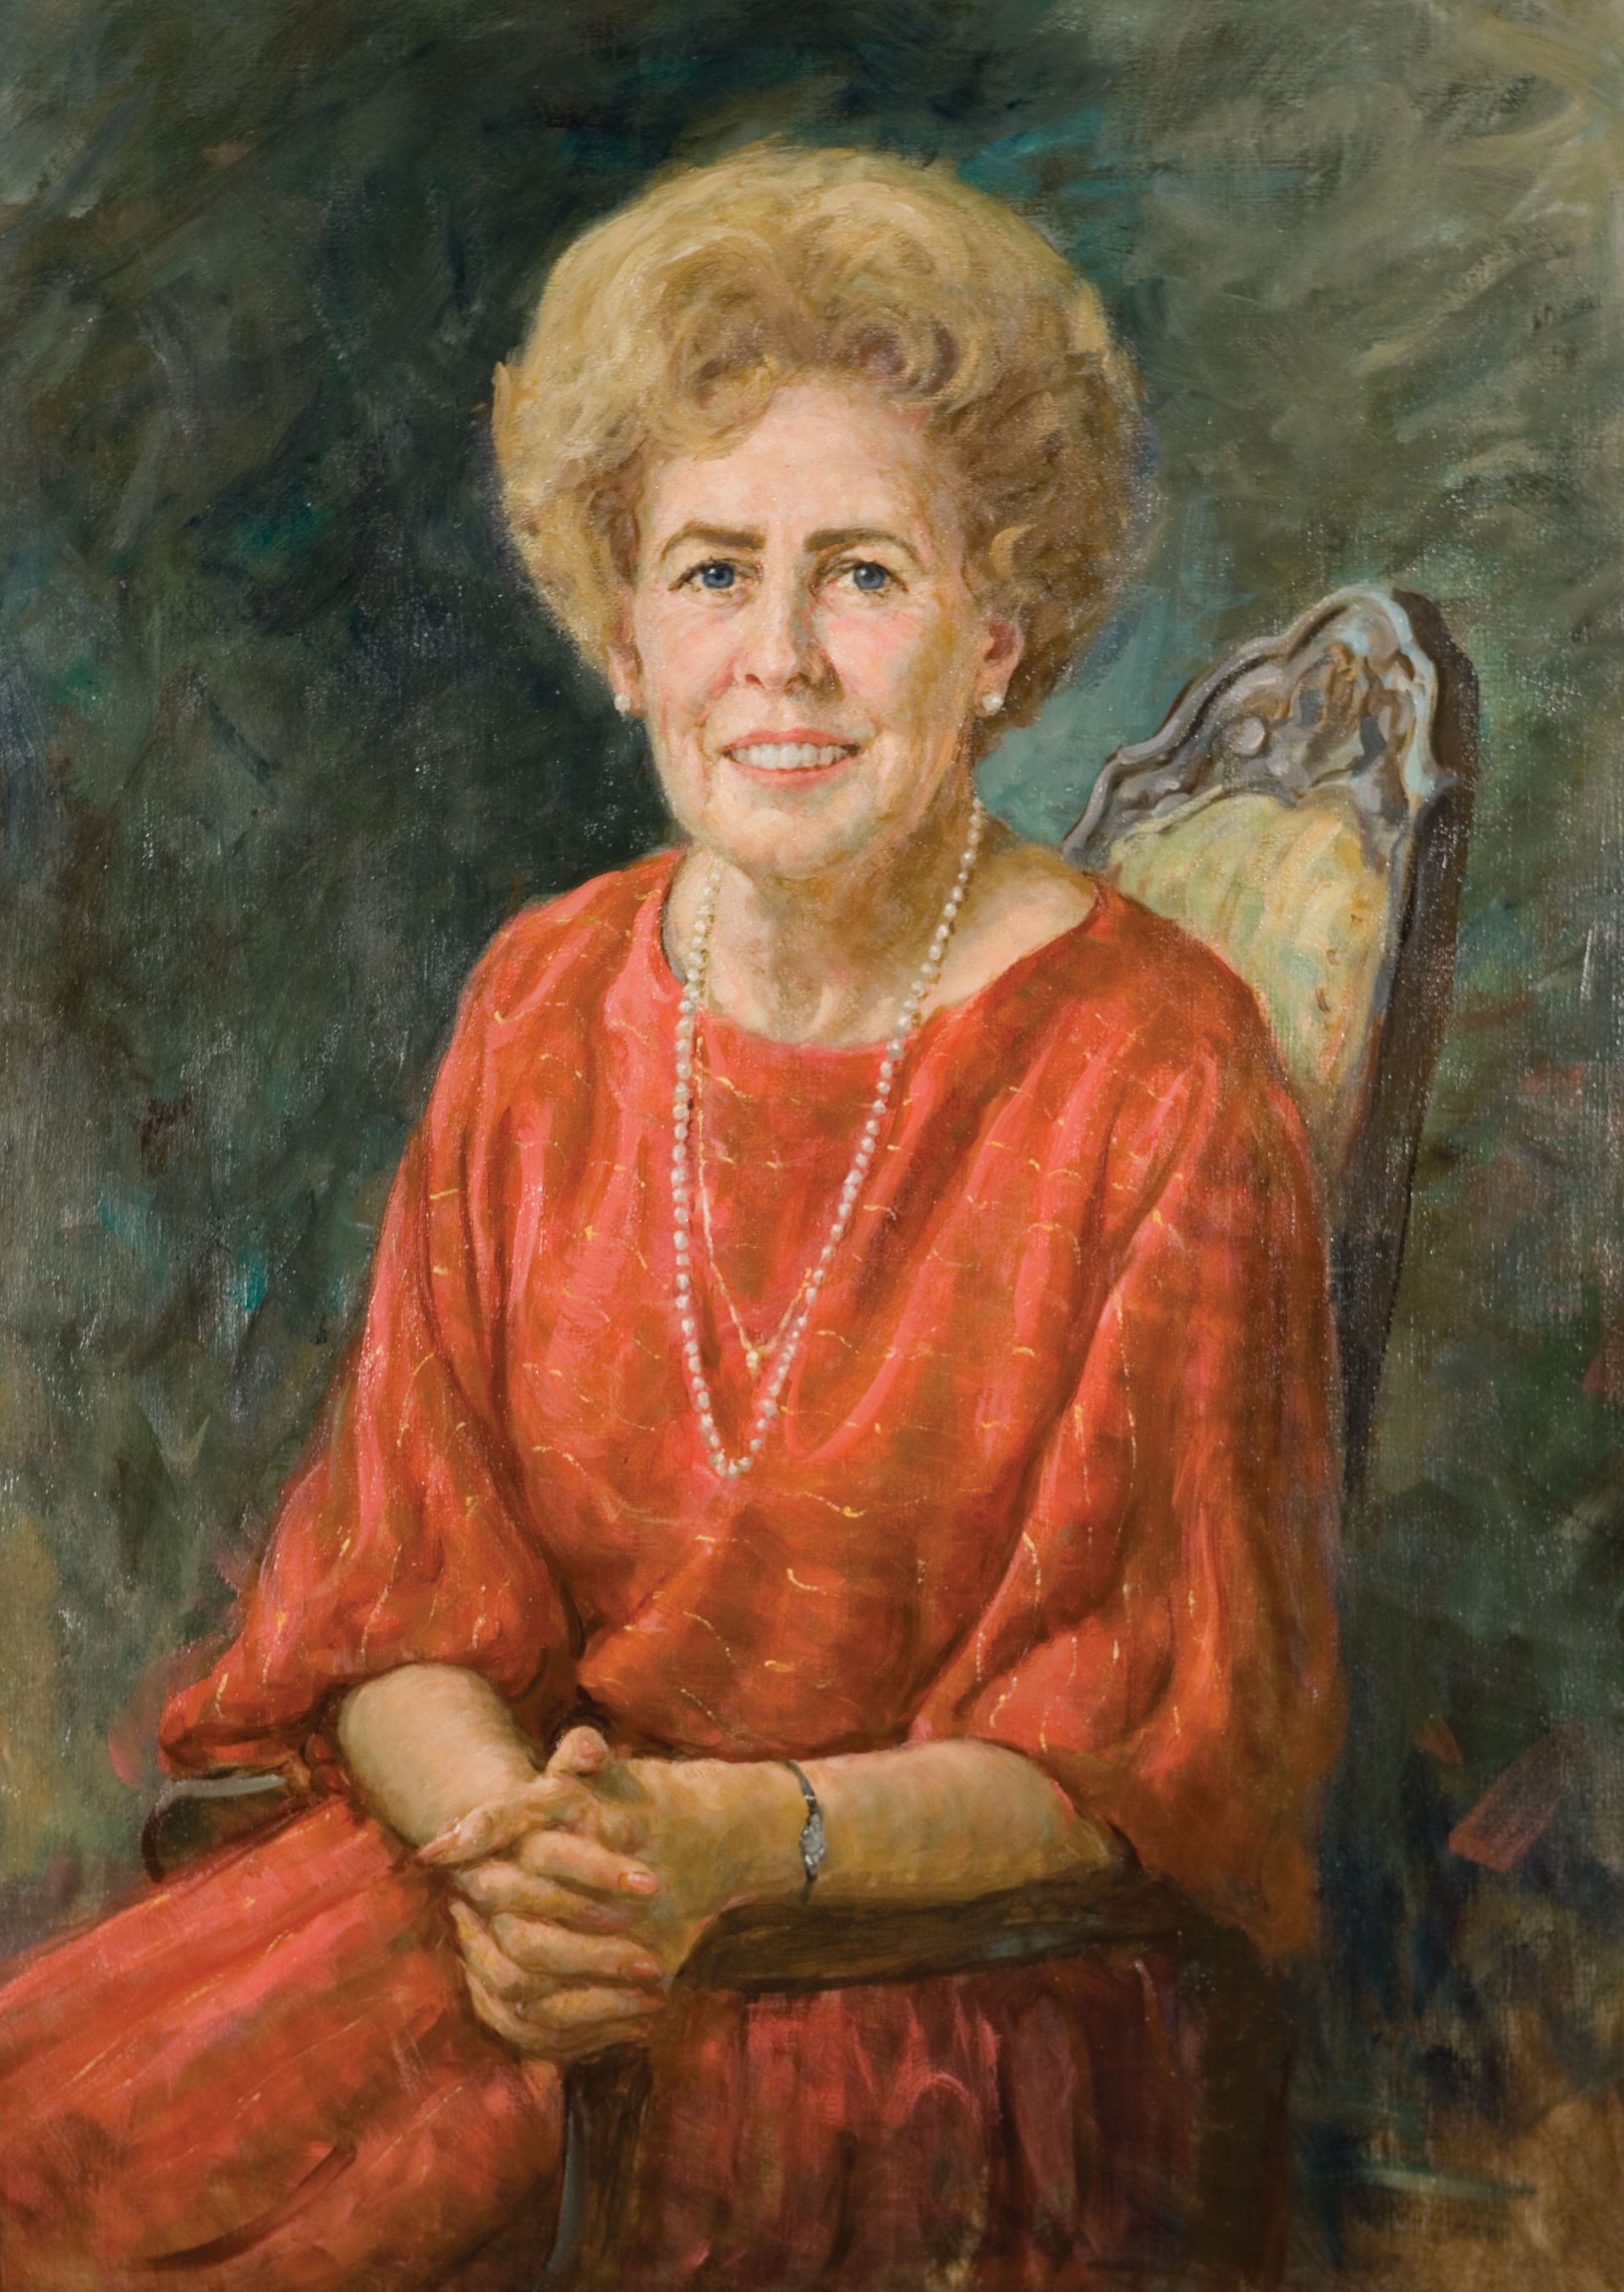 Retrato de Naomi Maxfield Shumway, quien prestó servicio como la sexta Presidenta General de la Primaria desde 1974 hasta 1980.